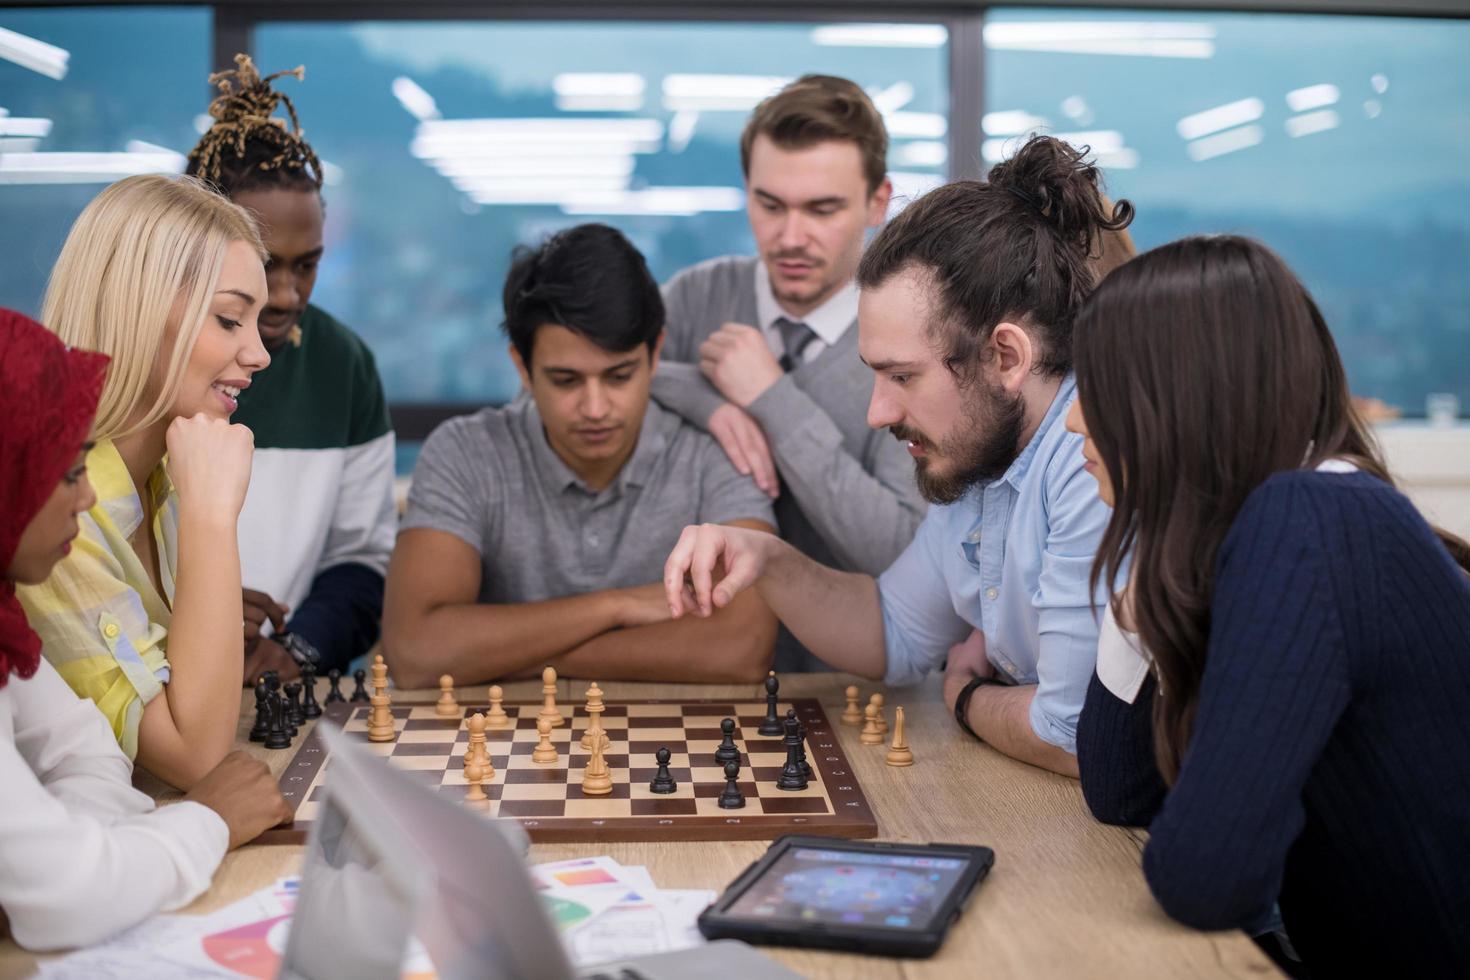 groupe multiethnique de gens d'affaires jouant aux échecs photo